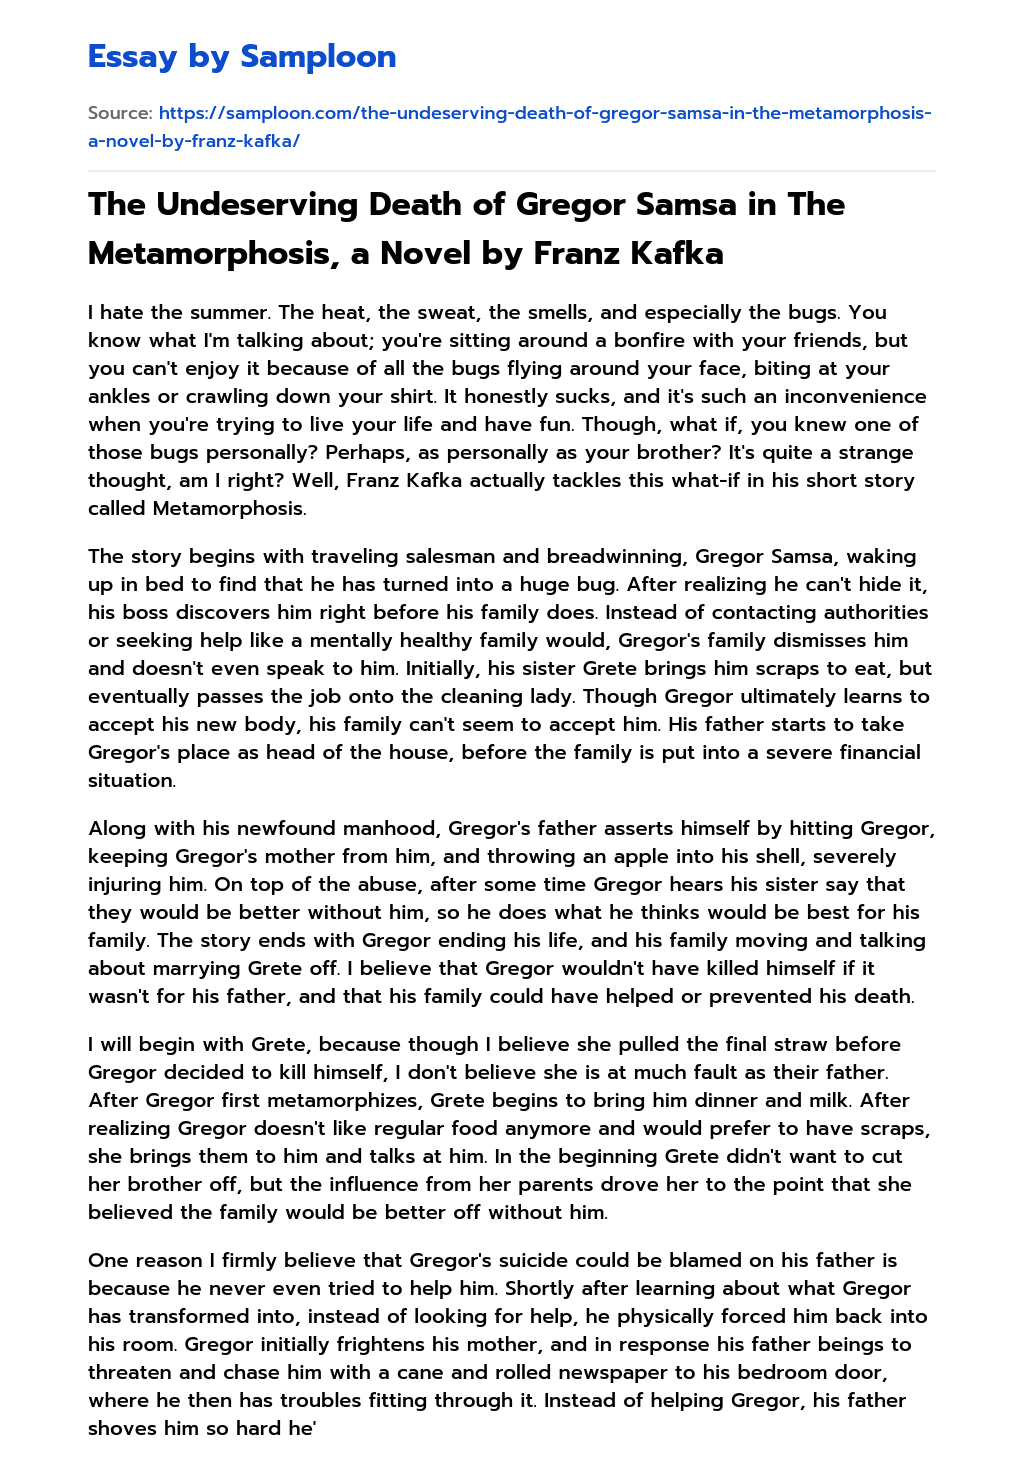 The Undeserving Death of Gregor Samsa in The Metamorphosis, a Novel by Franz Kafka essay